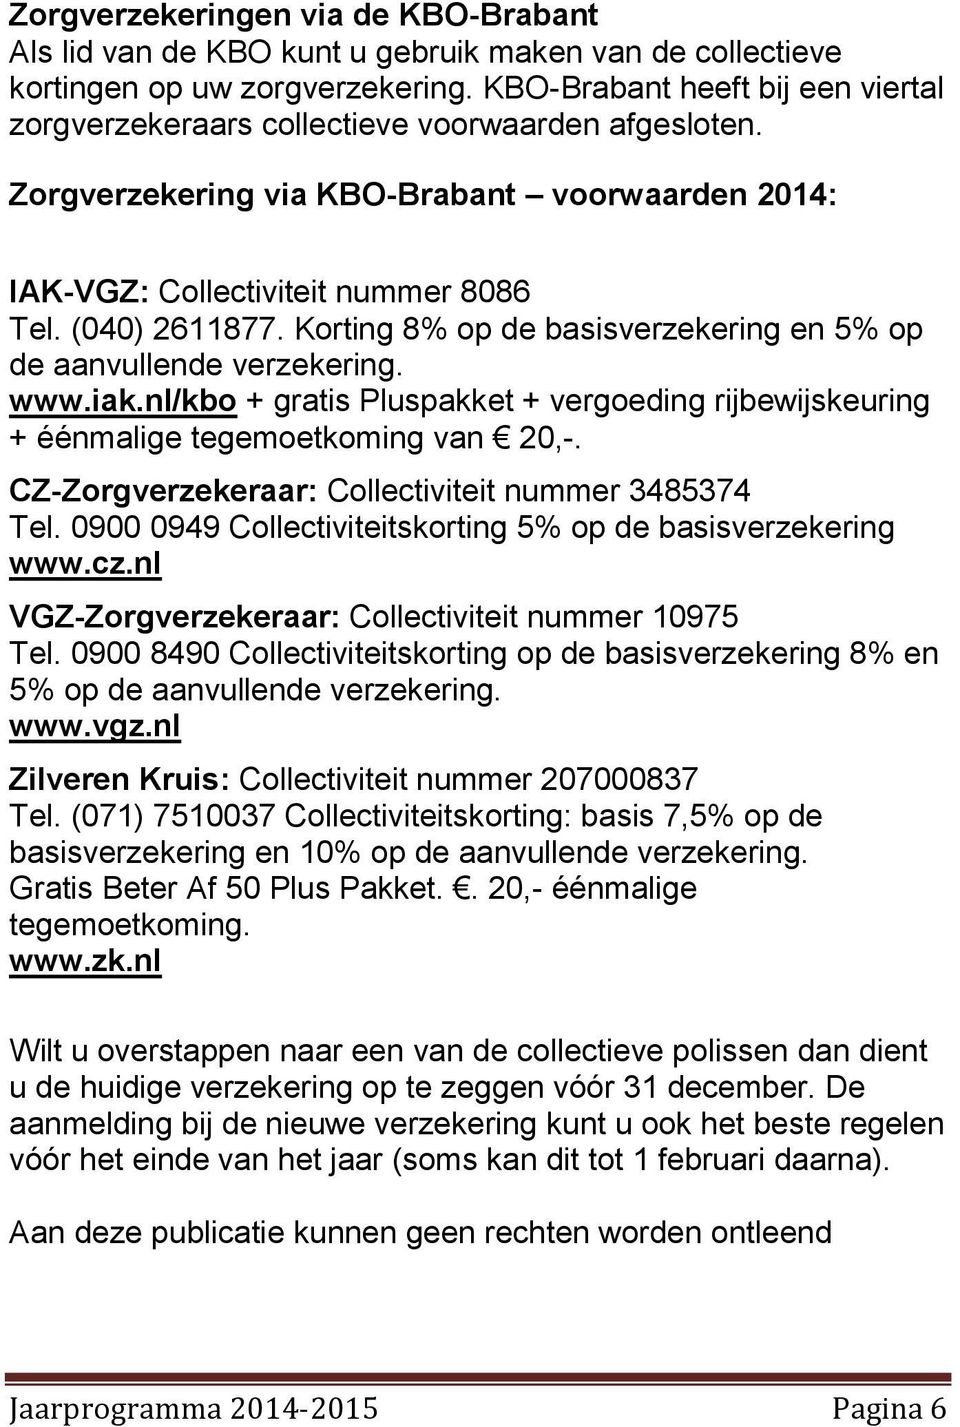 Korting 8% op de basisverzekering en 5% op de aanvullende verzekering. www.iak.nl/kbo + gratis Pluspakket + vergoeding rijbewijskeuring + éénmalige tegemoetkoming van 20,-.